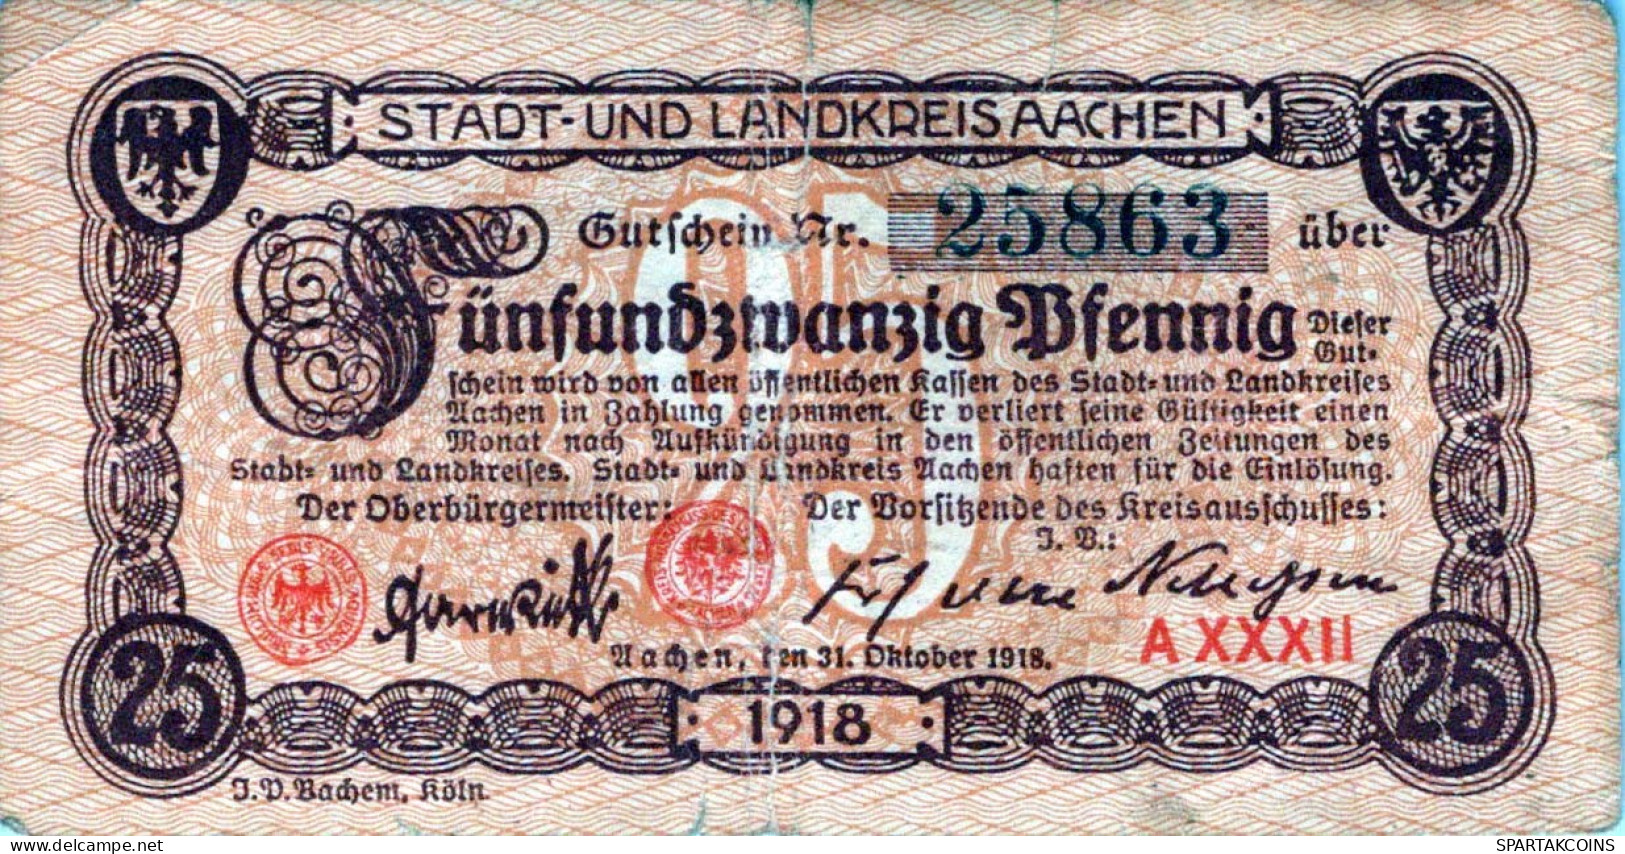 25 PFENNIG 1918 Stadt AACHEN Rhine DEUTSCHLAND Notgeld Banknote #PG024 - [11] Emisiones Locales